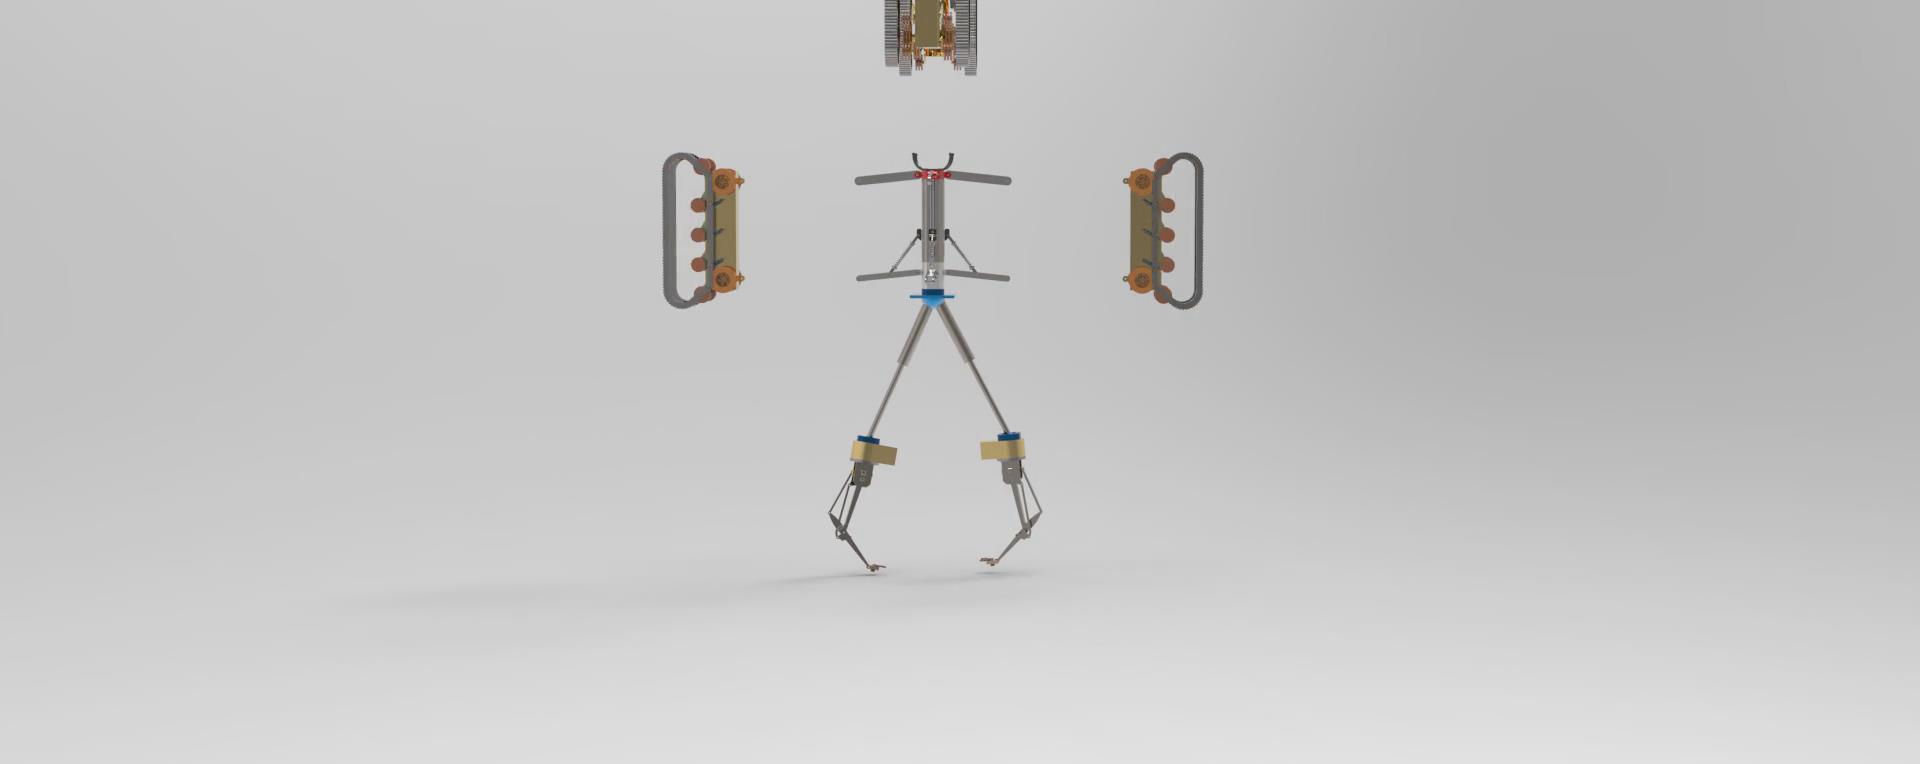 智能产品竞赛作品——竖井式采样、勘探、辅助救援化一体机器人的构造与设计